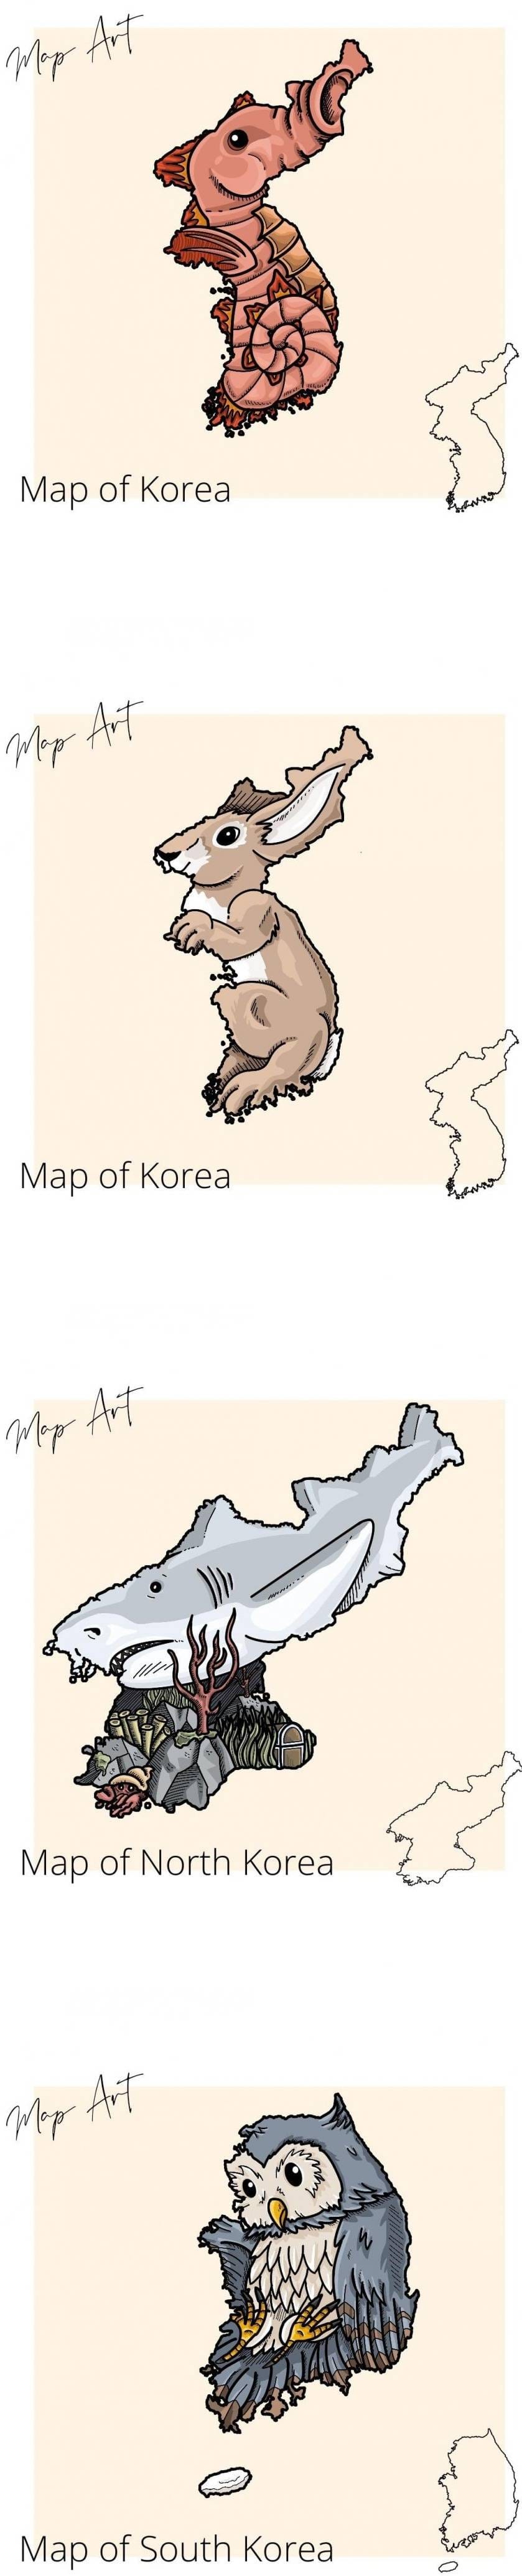 10 외국에서 보는 한국 국토 모양.jpg